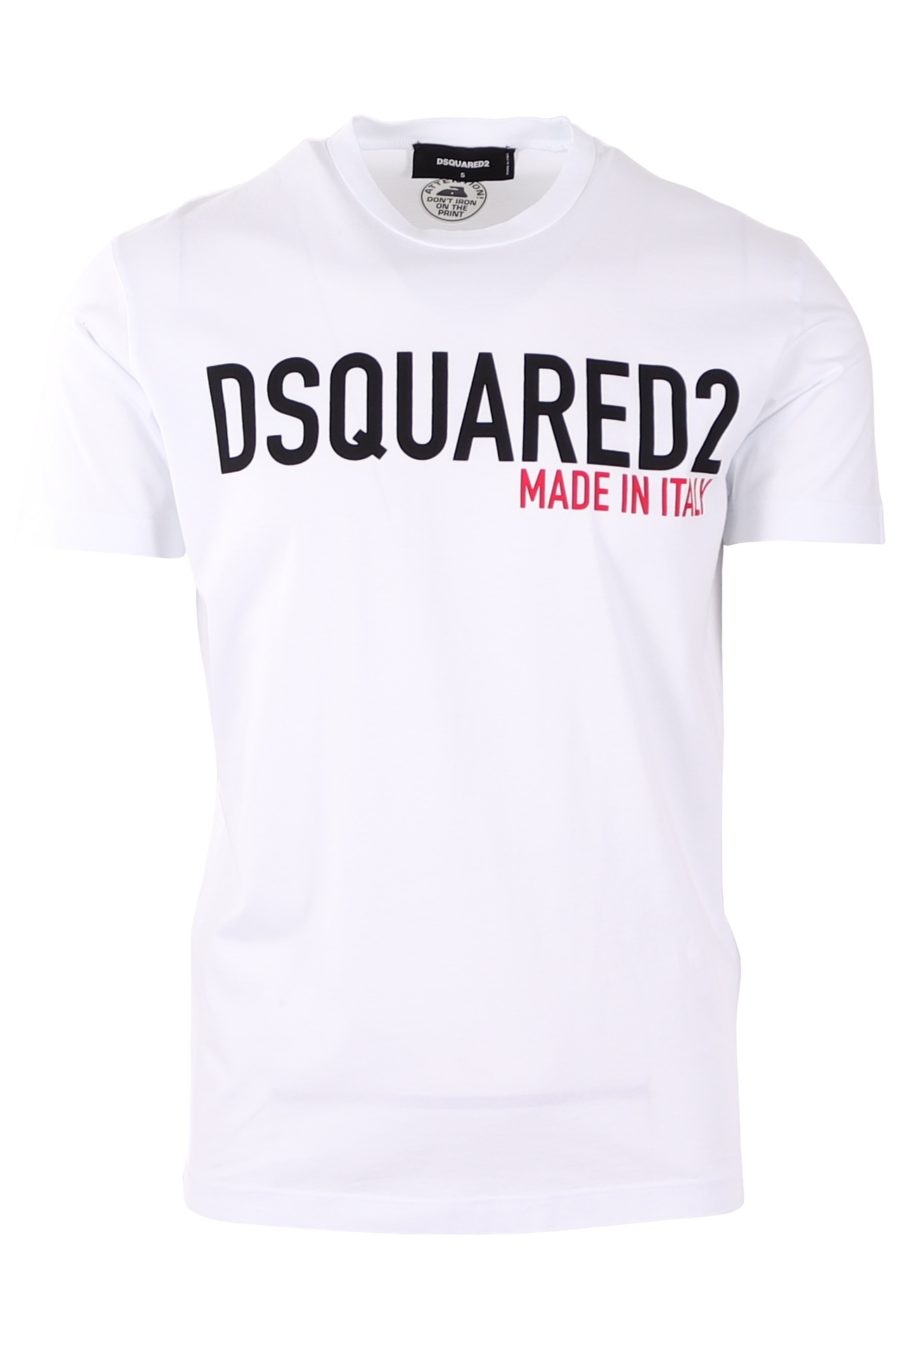 Camiseta Dsquared2 blanca logo negro made in italy - e7702cefc29715977d70494c66043222ae45d7f4